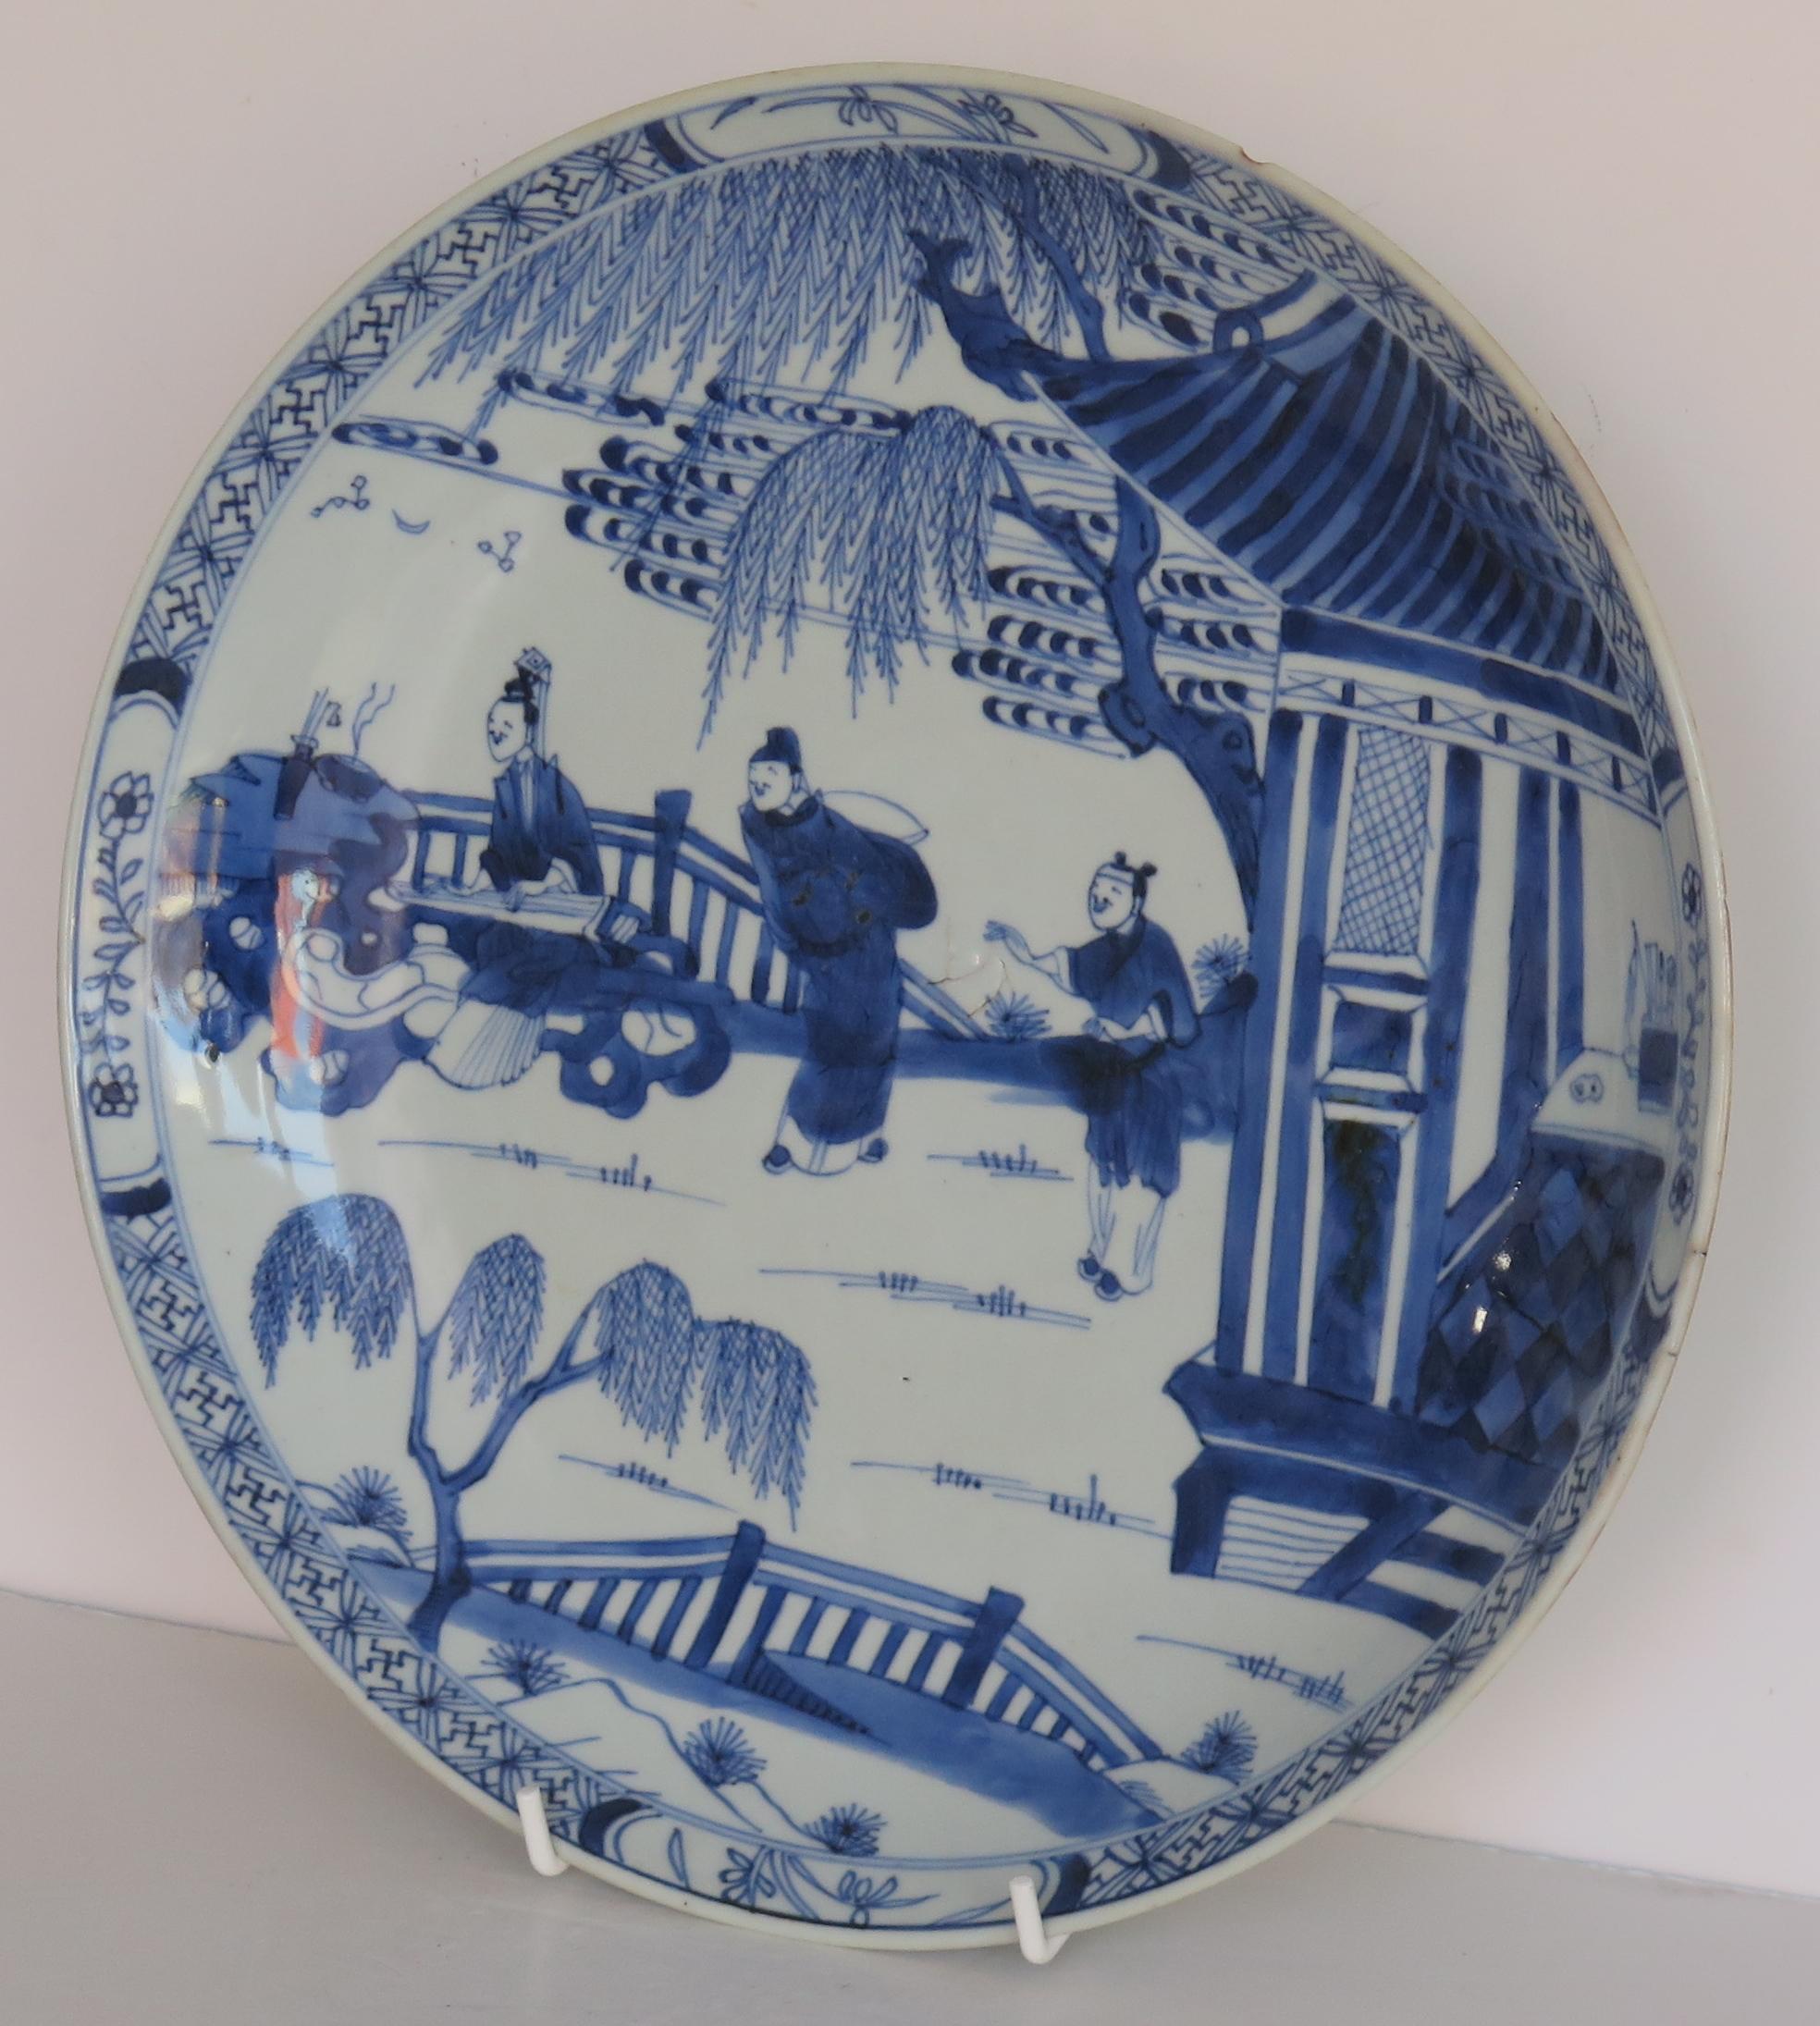 Qing Kangxi Marked Large Chinese Dish or Plate Porcelain Blue & White, Circa 1690